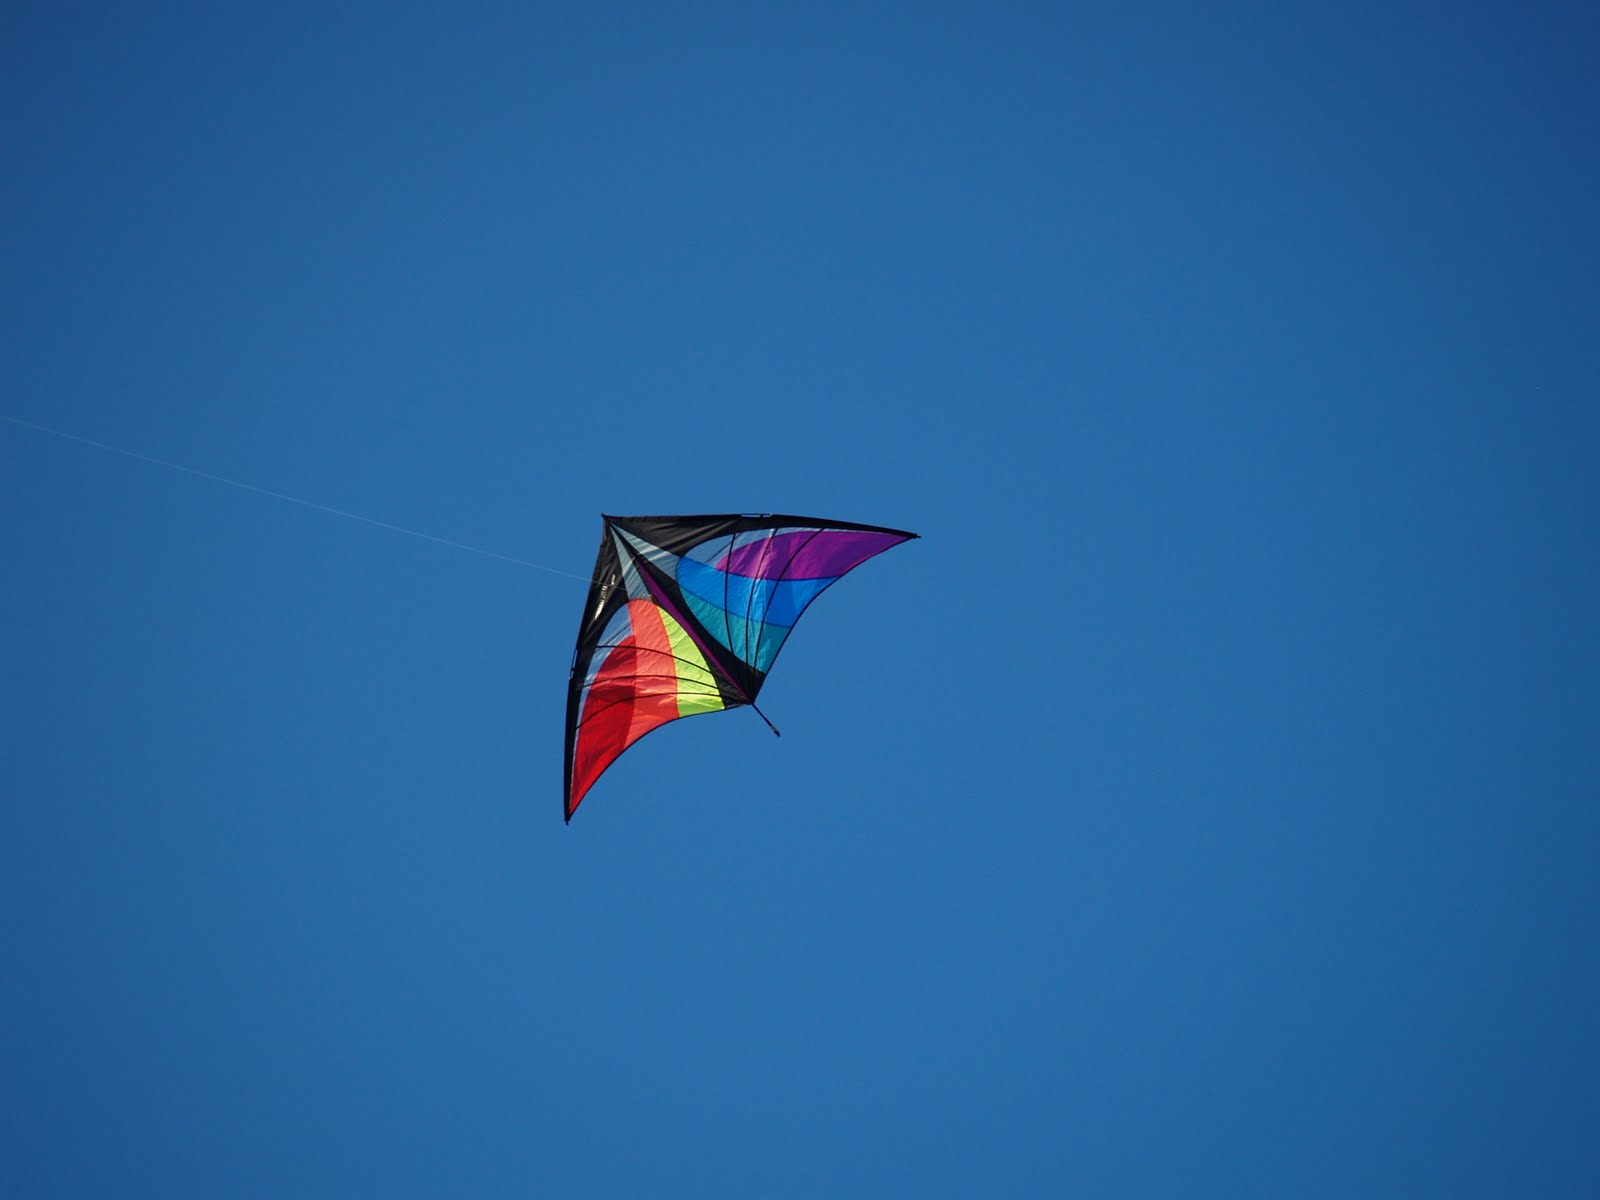 A triangular rainbow kite against a deep blue sky.